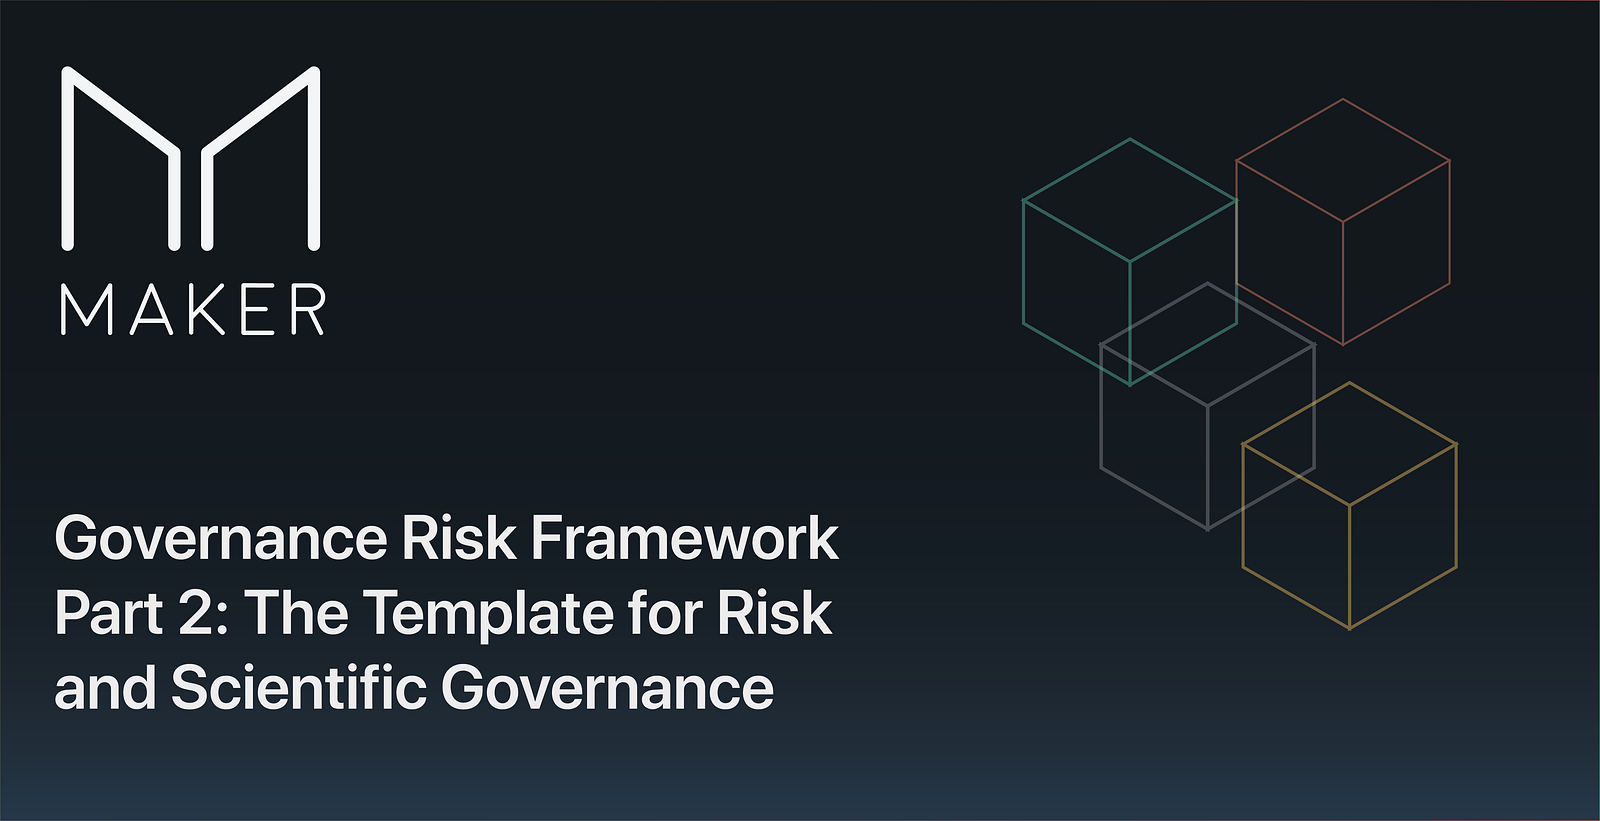 The Governance Risk Framework: Part 2